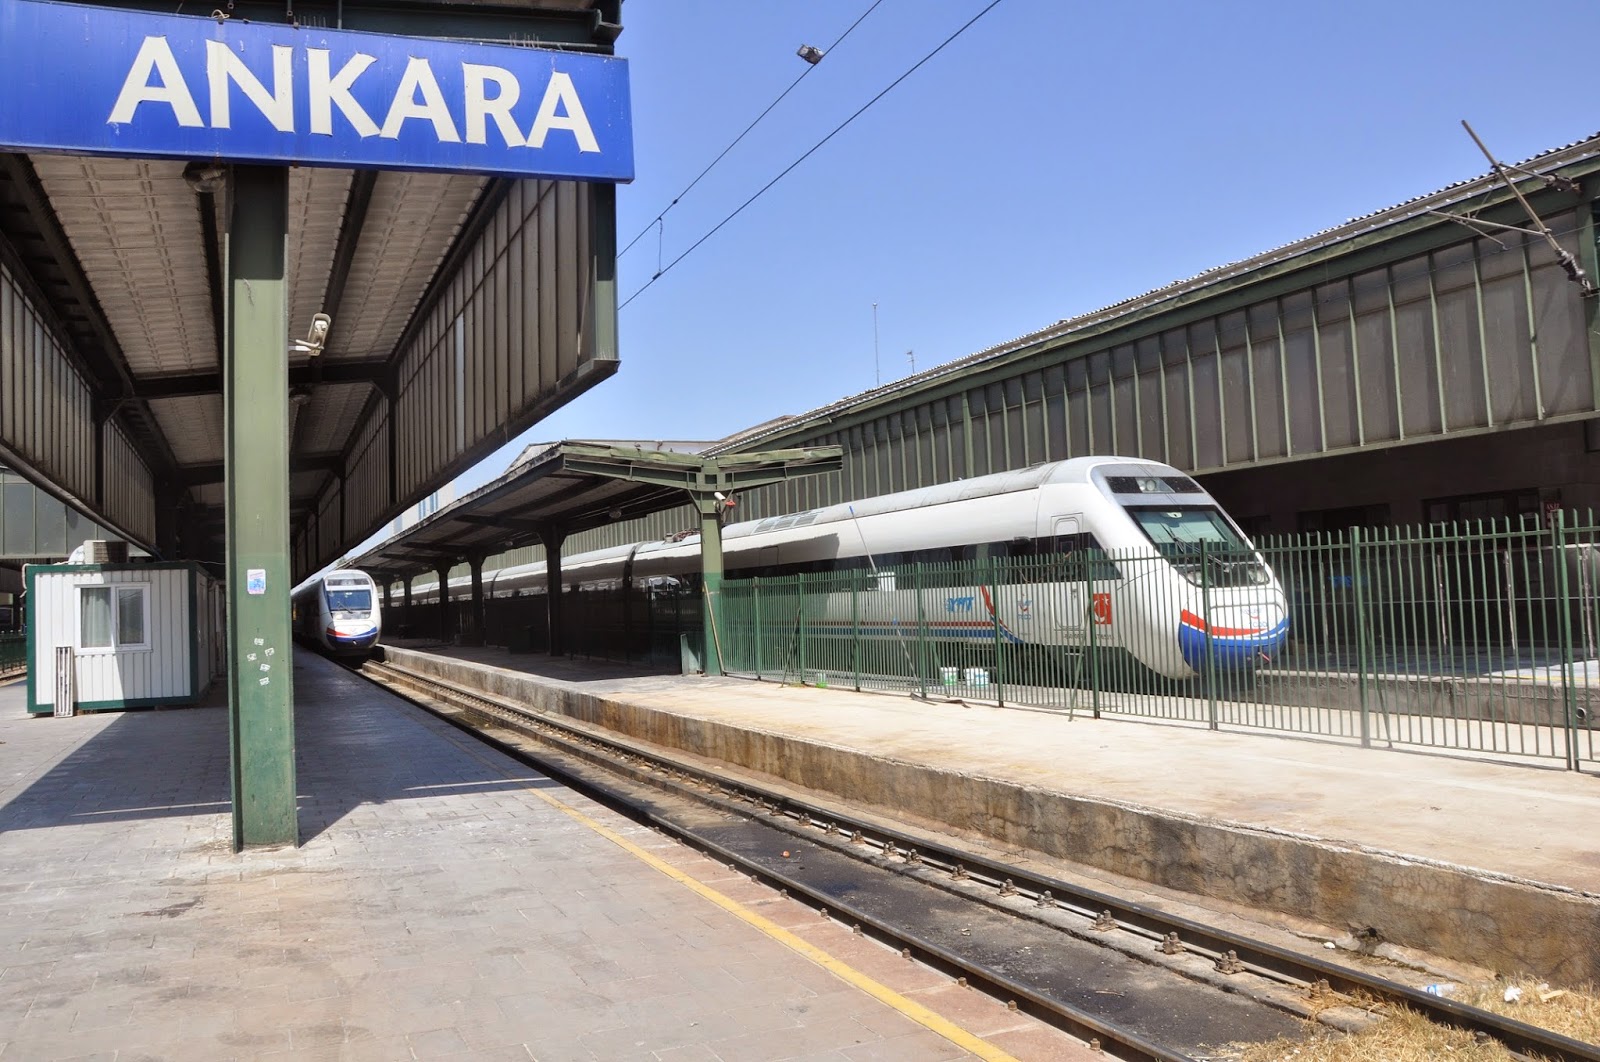 İzmir Ankara tren saatleri